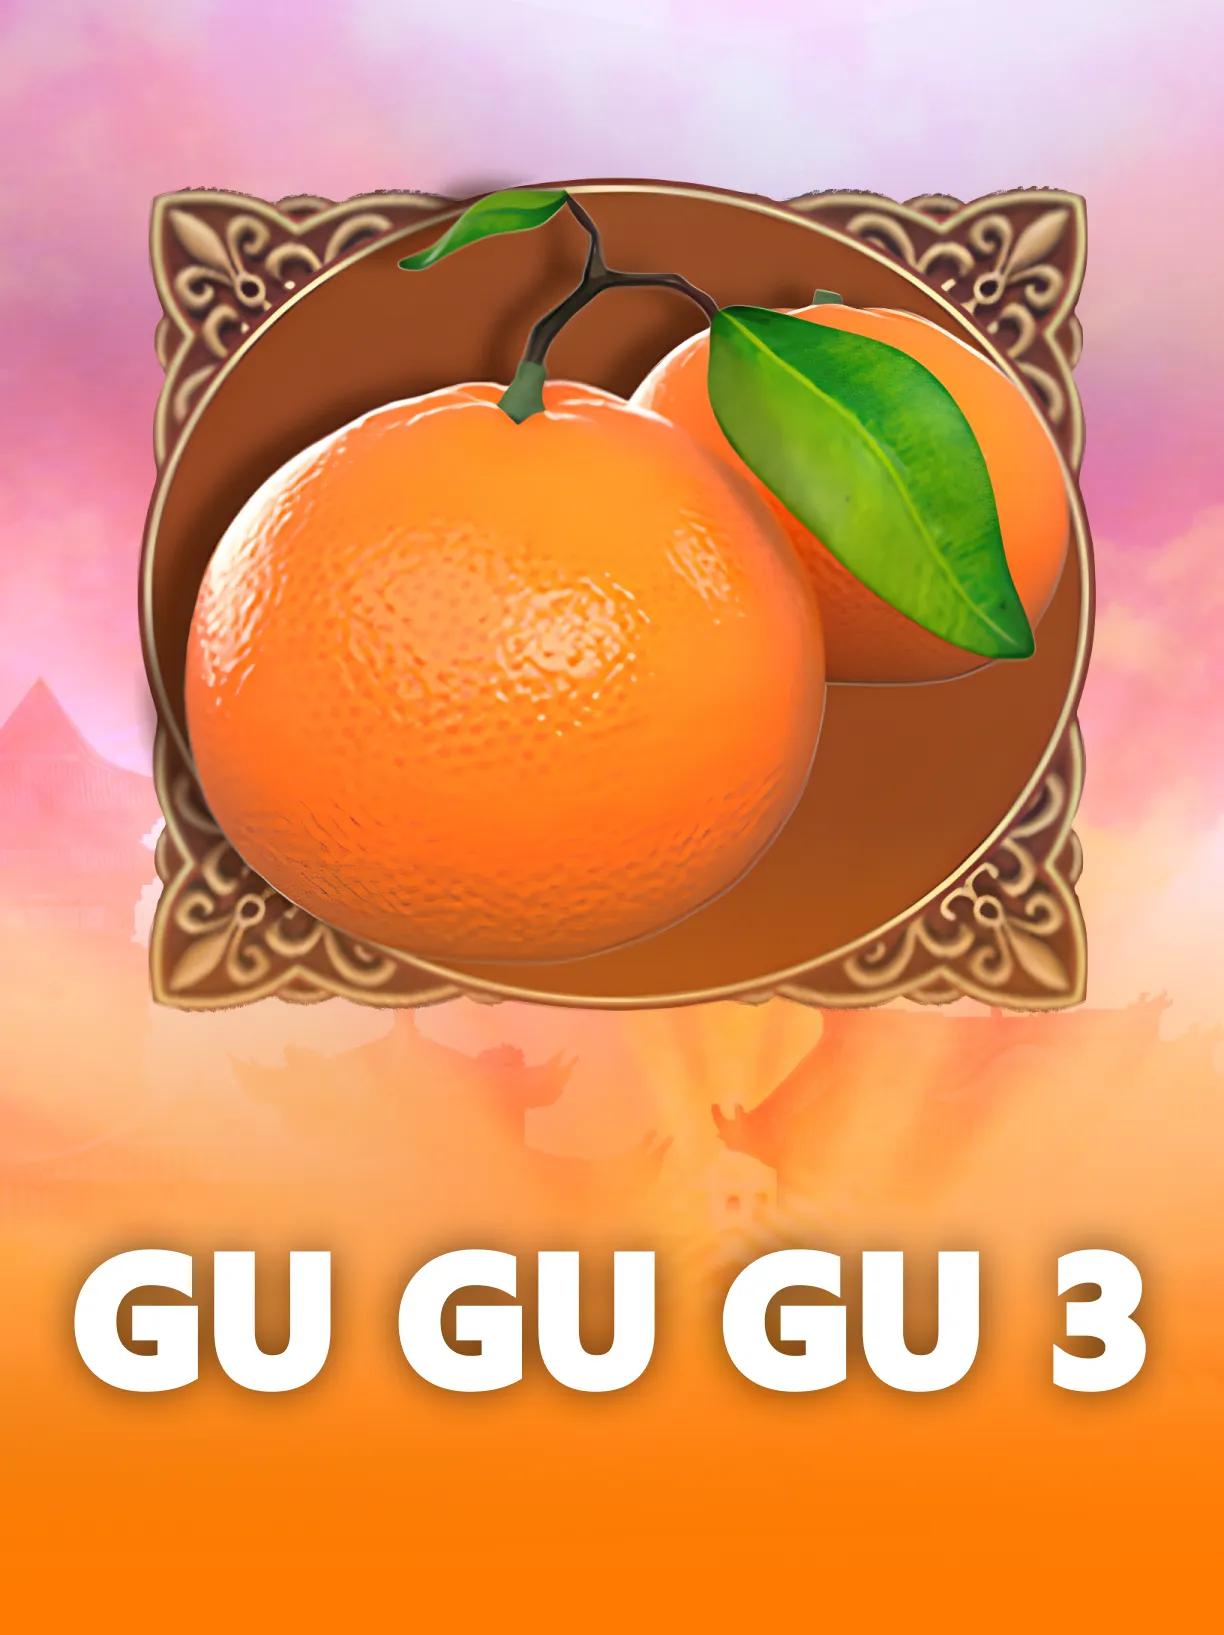 Gu Gu Gu 3